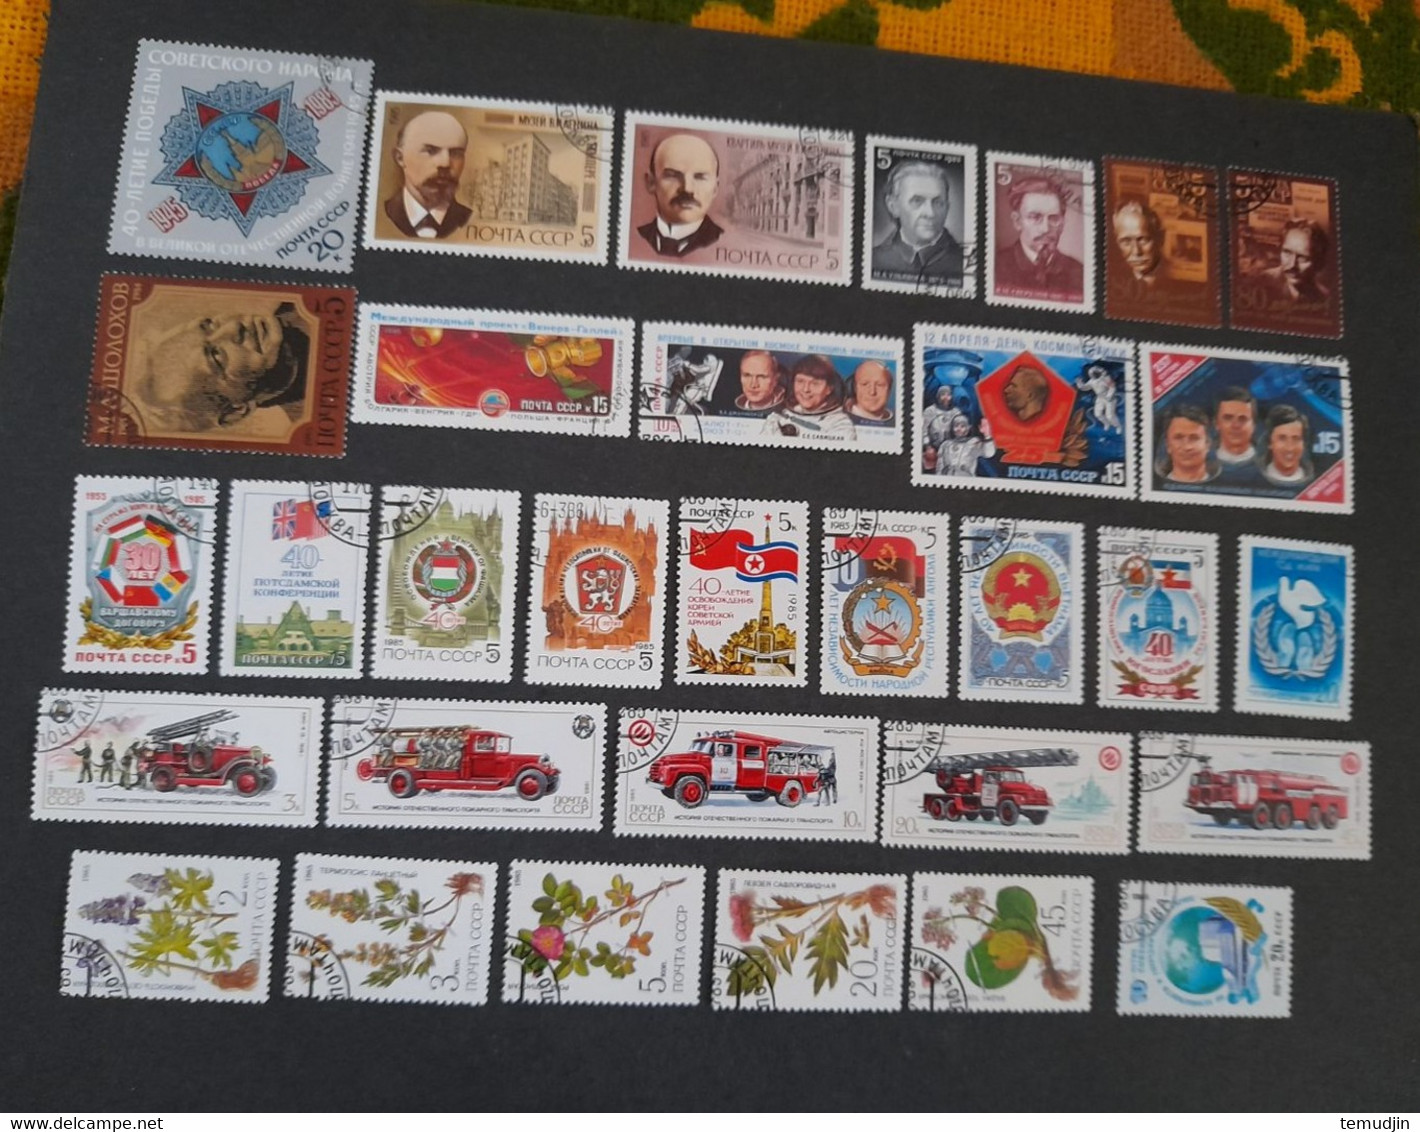 U.R.S.S.  1984 et 1985: 2 années complètes Yv. timbres oblitérés° avec blocs